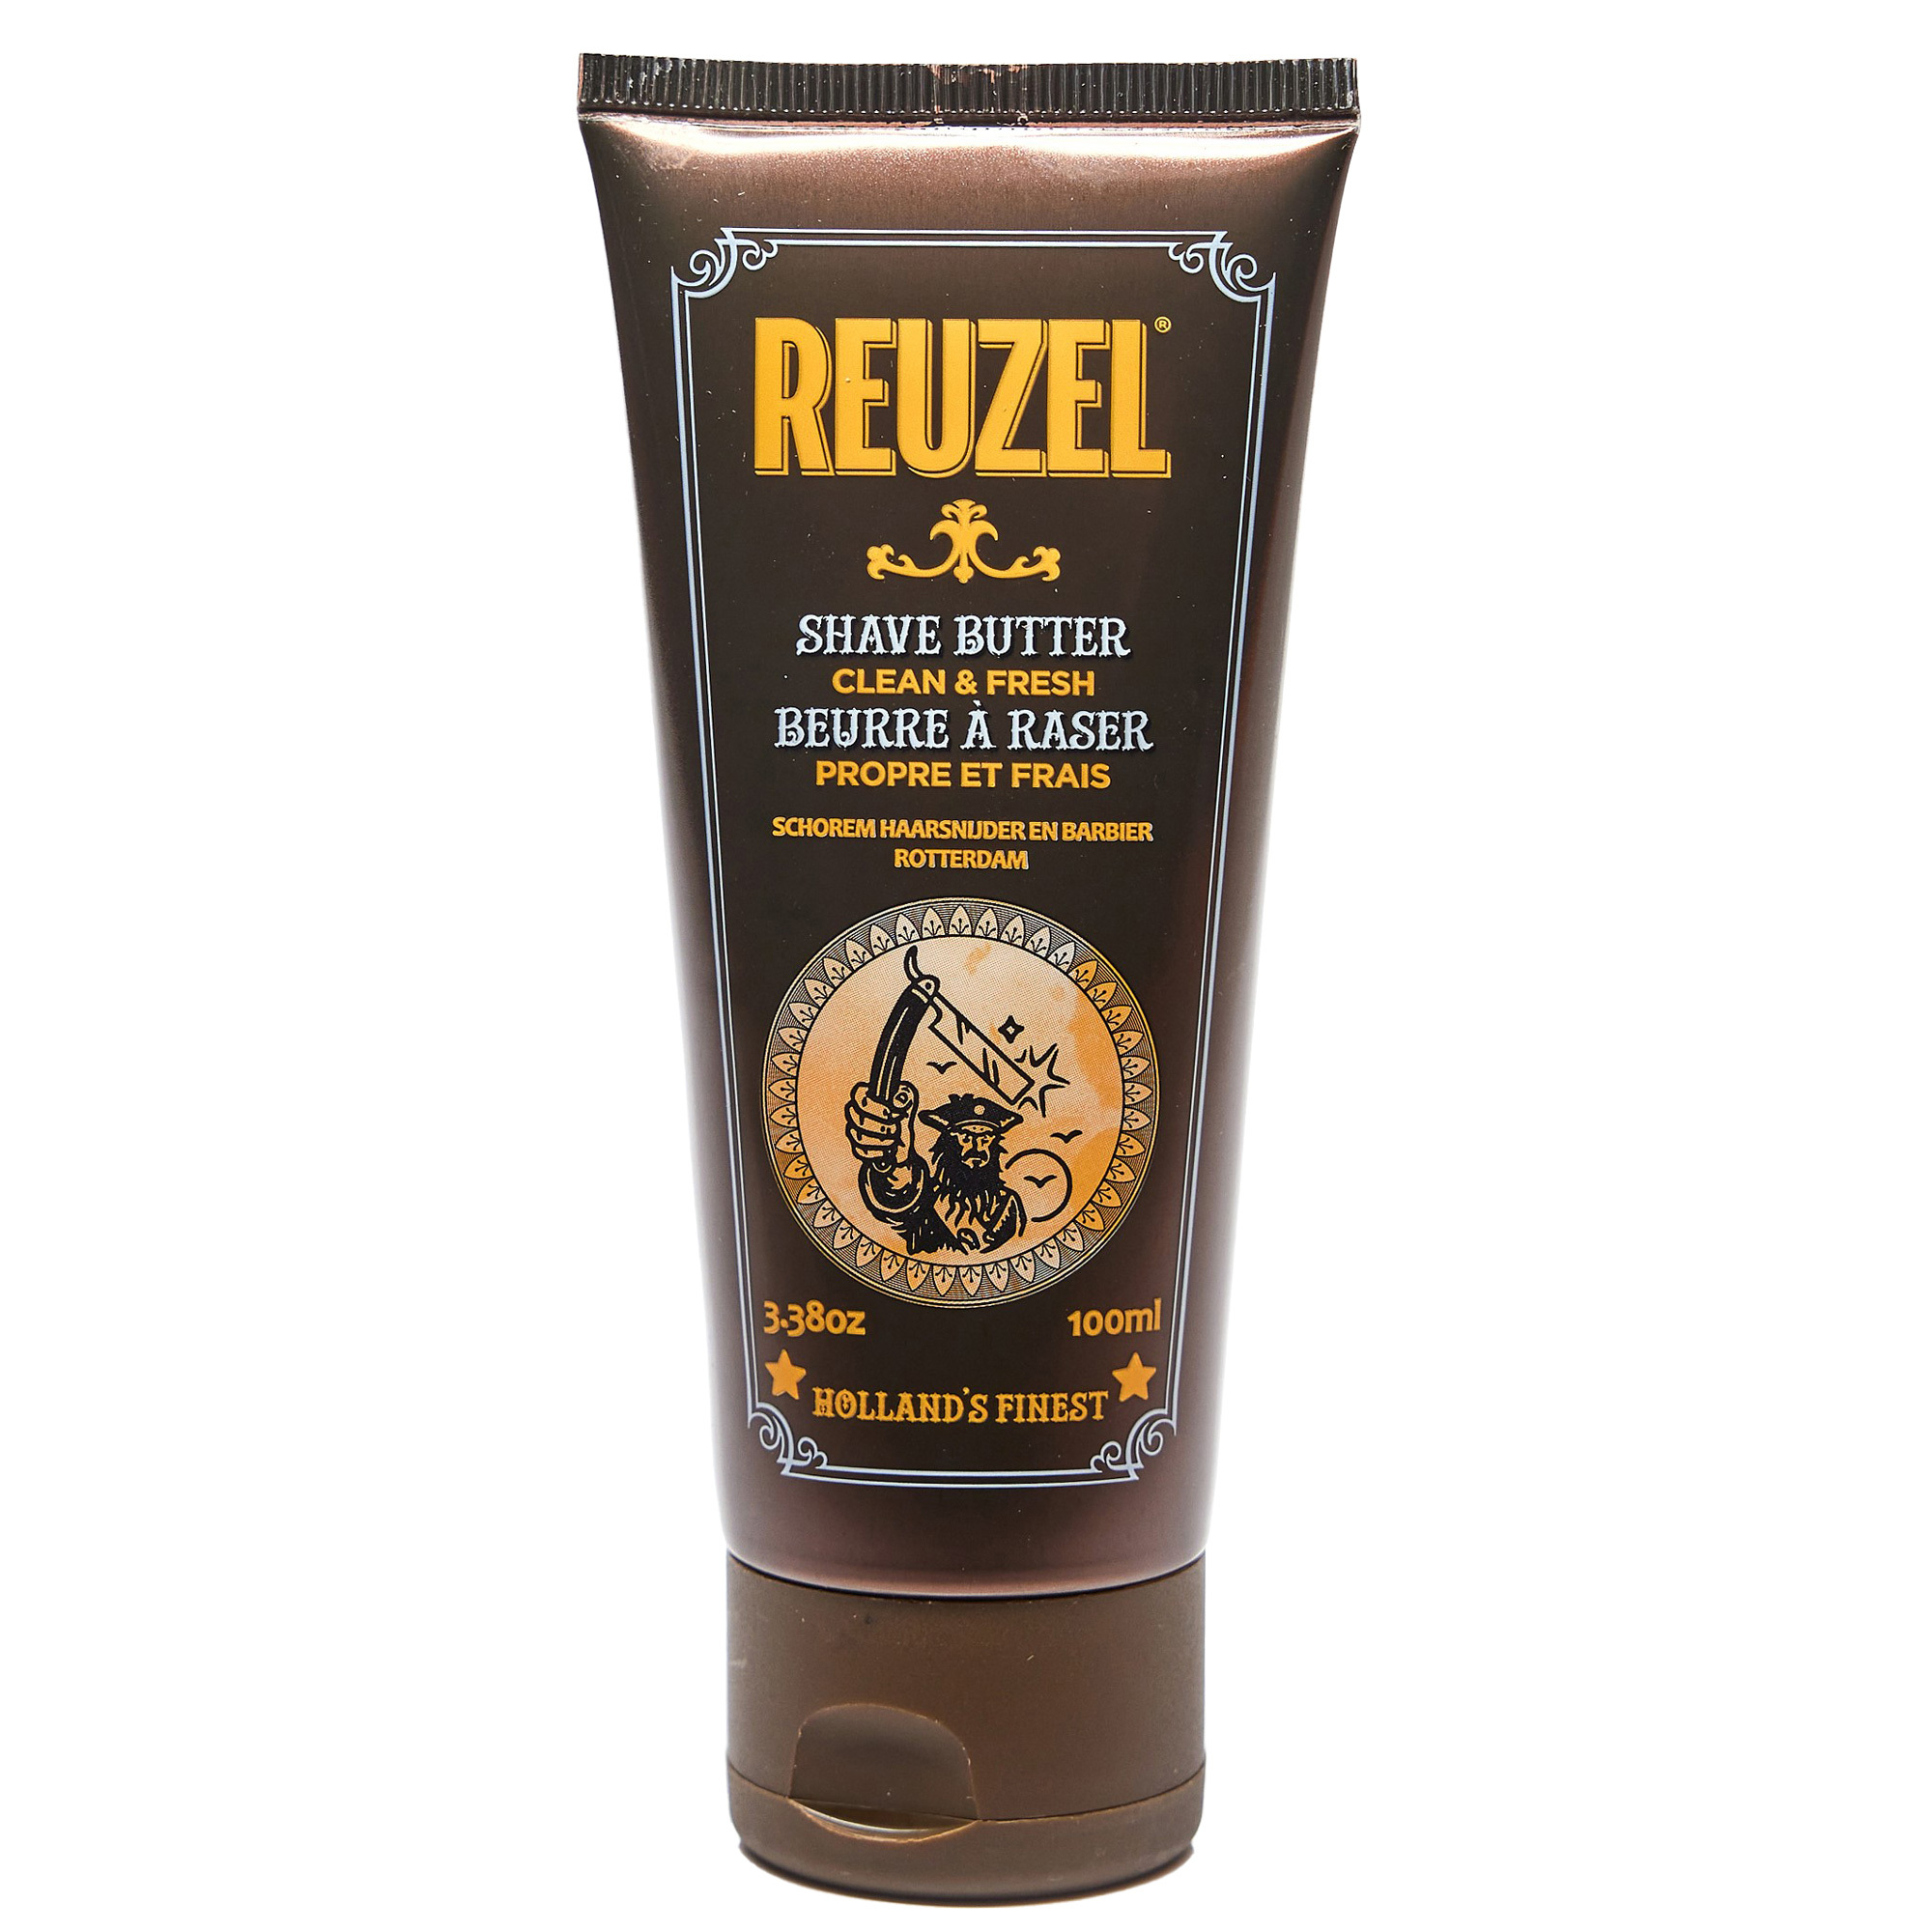 Reuzel Clean & Fresh Shave Butter 3.38oz